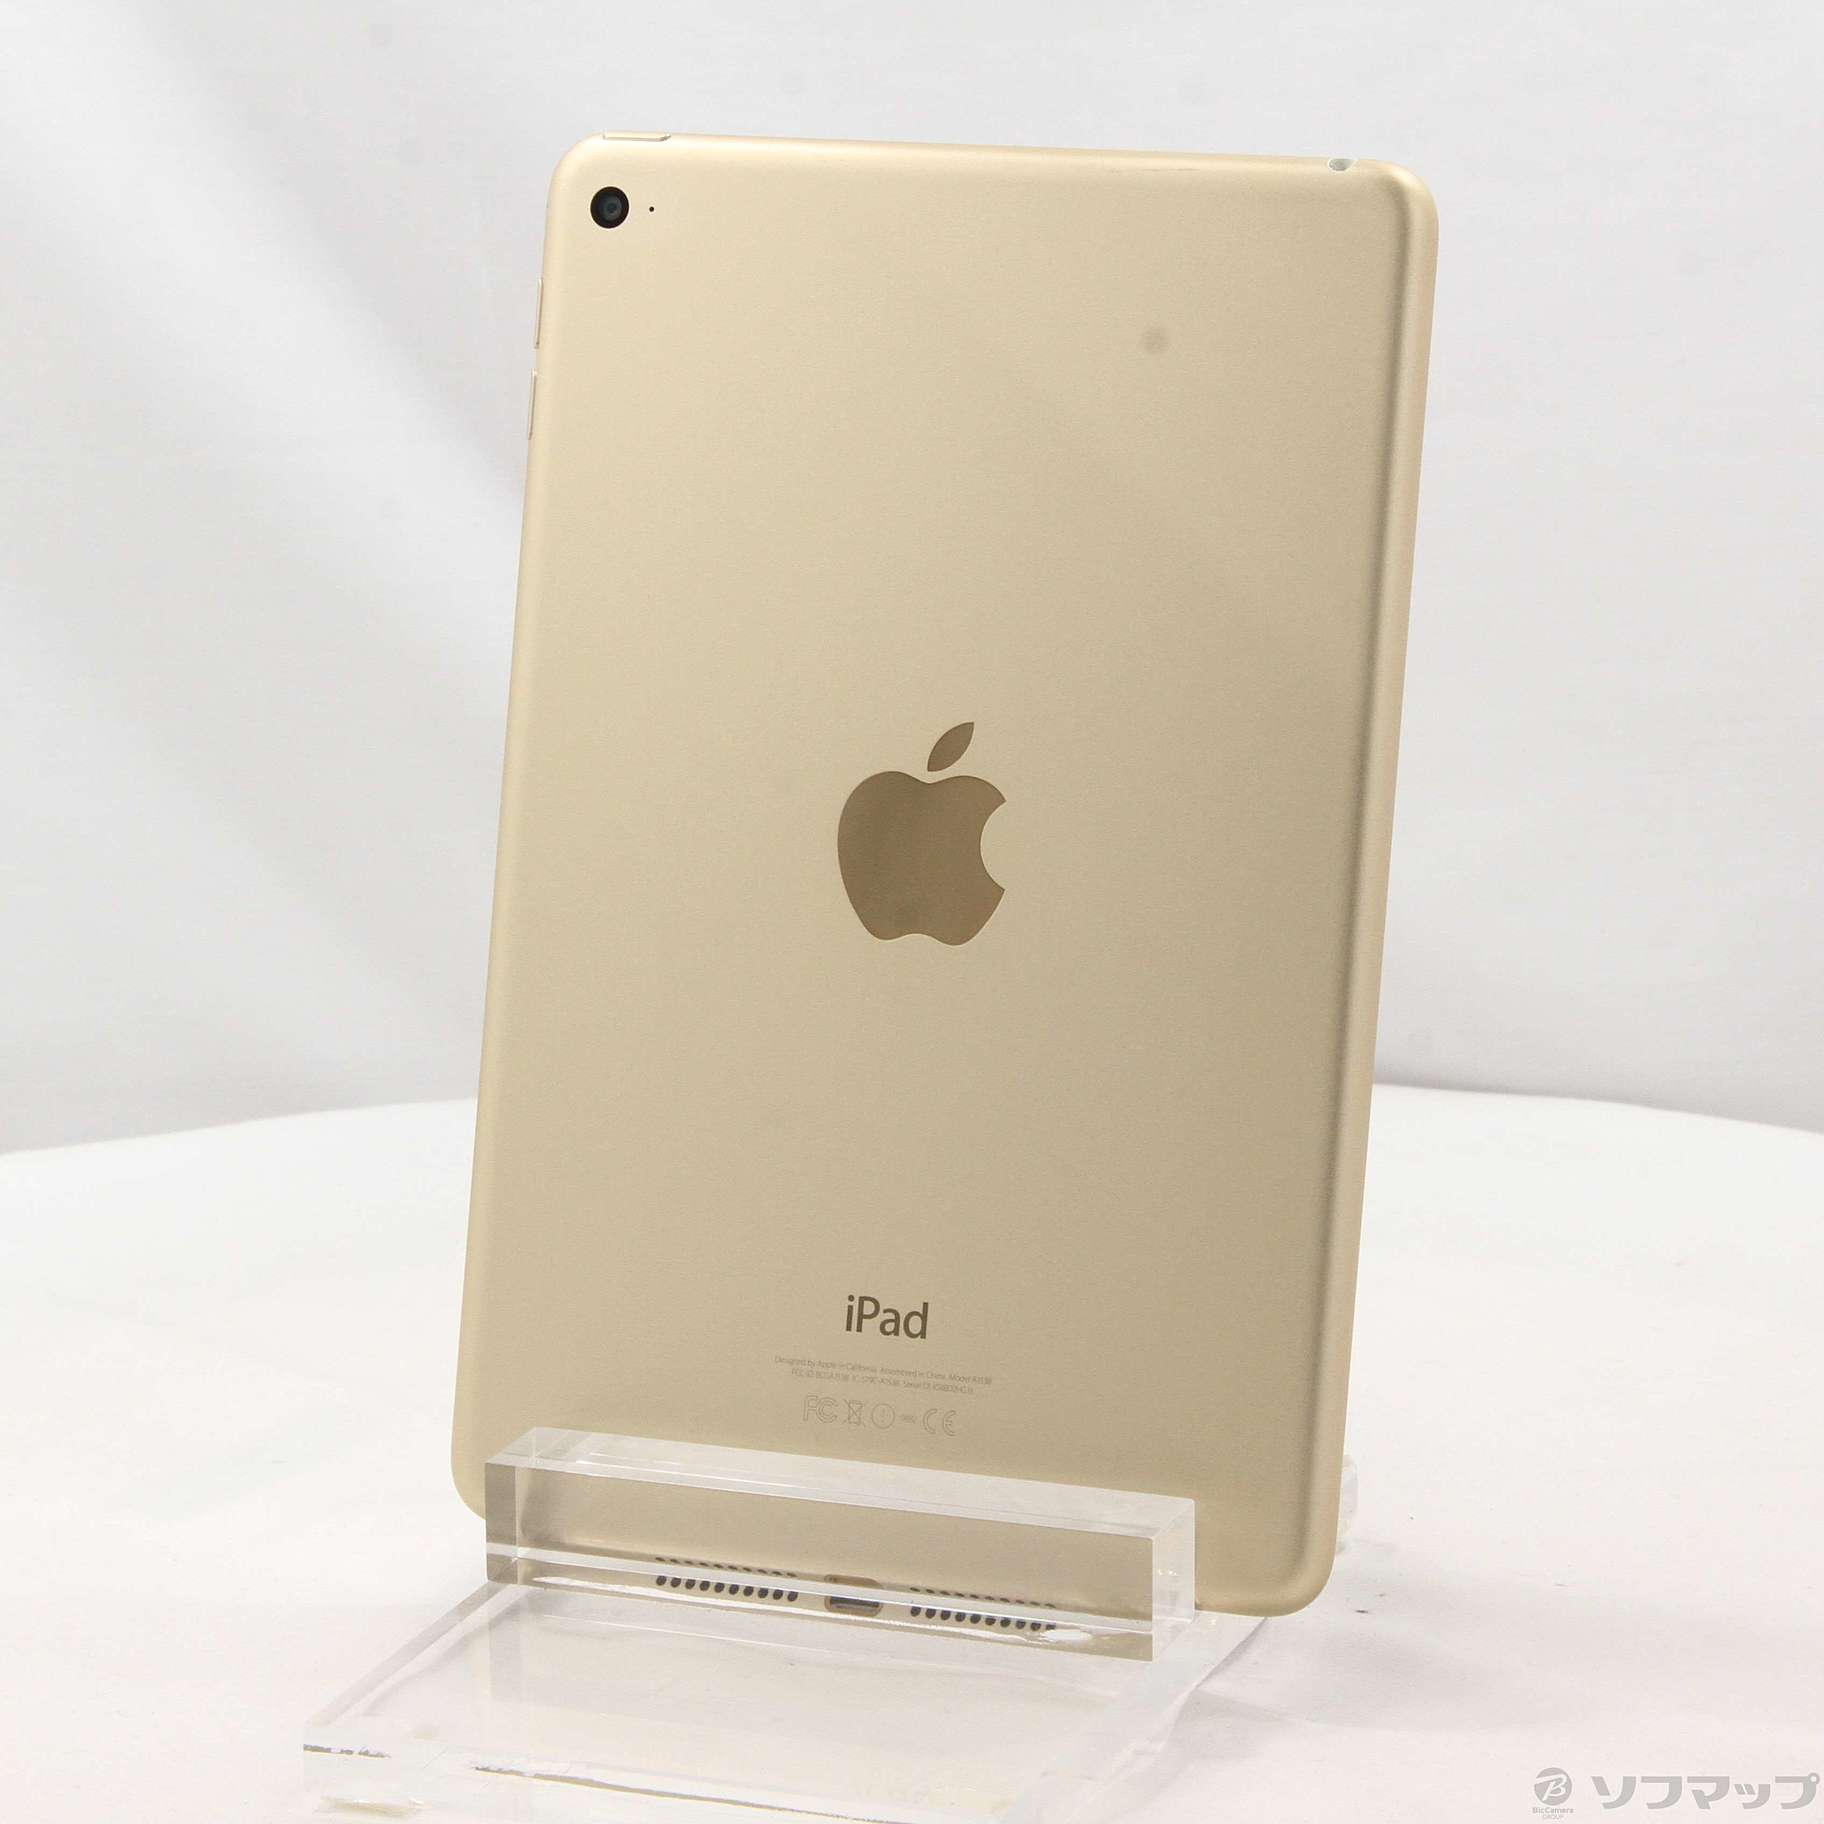 アップル iPad mini 4 32GB ゴールド